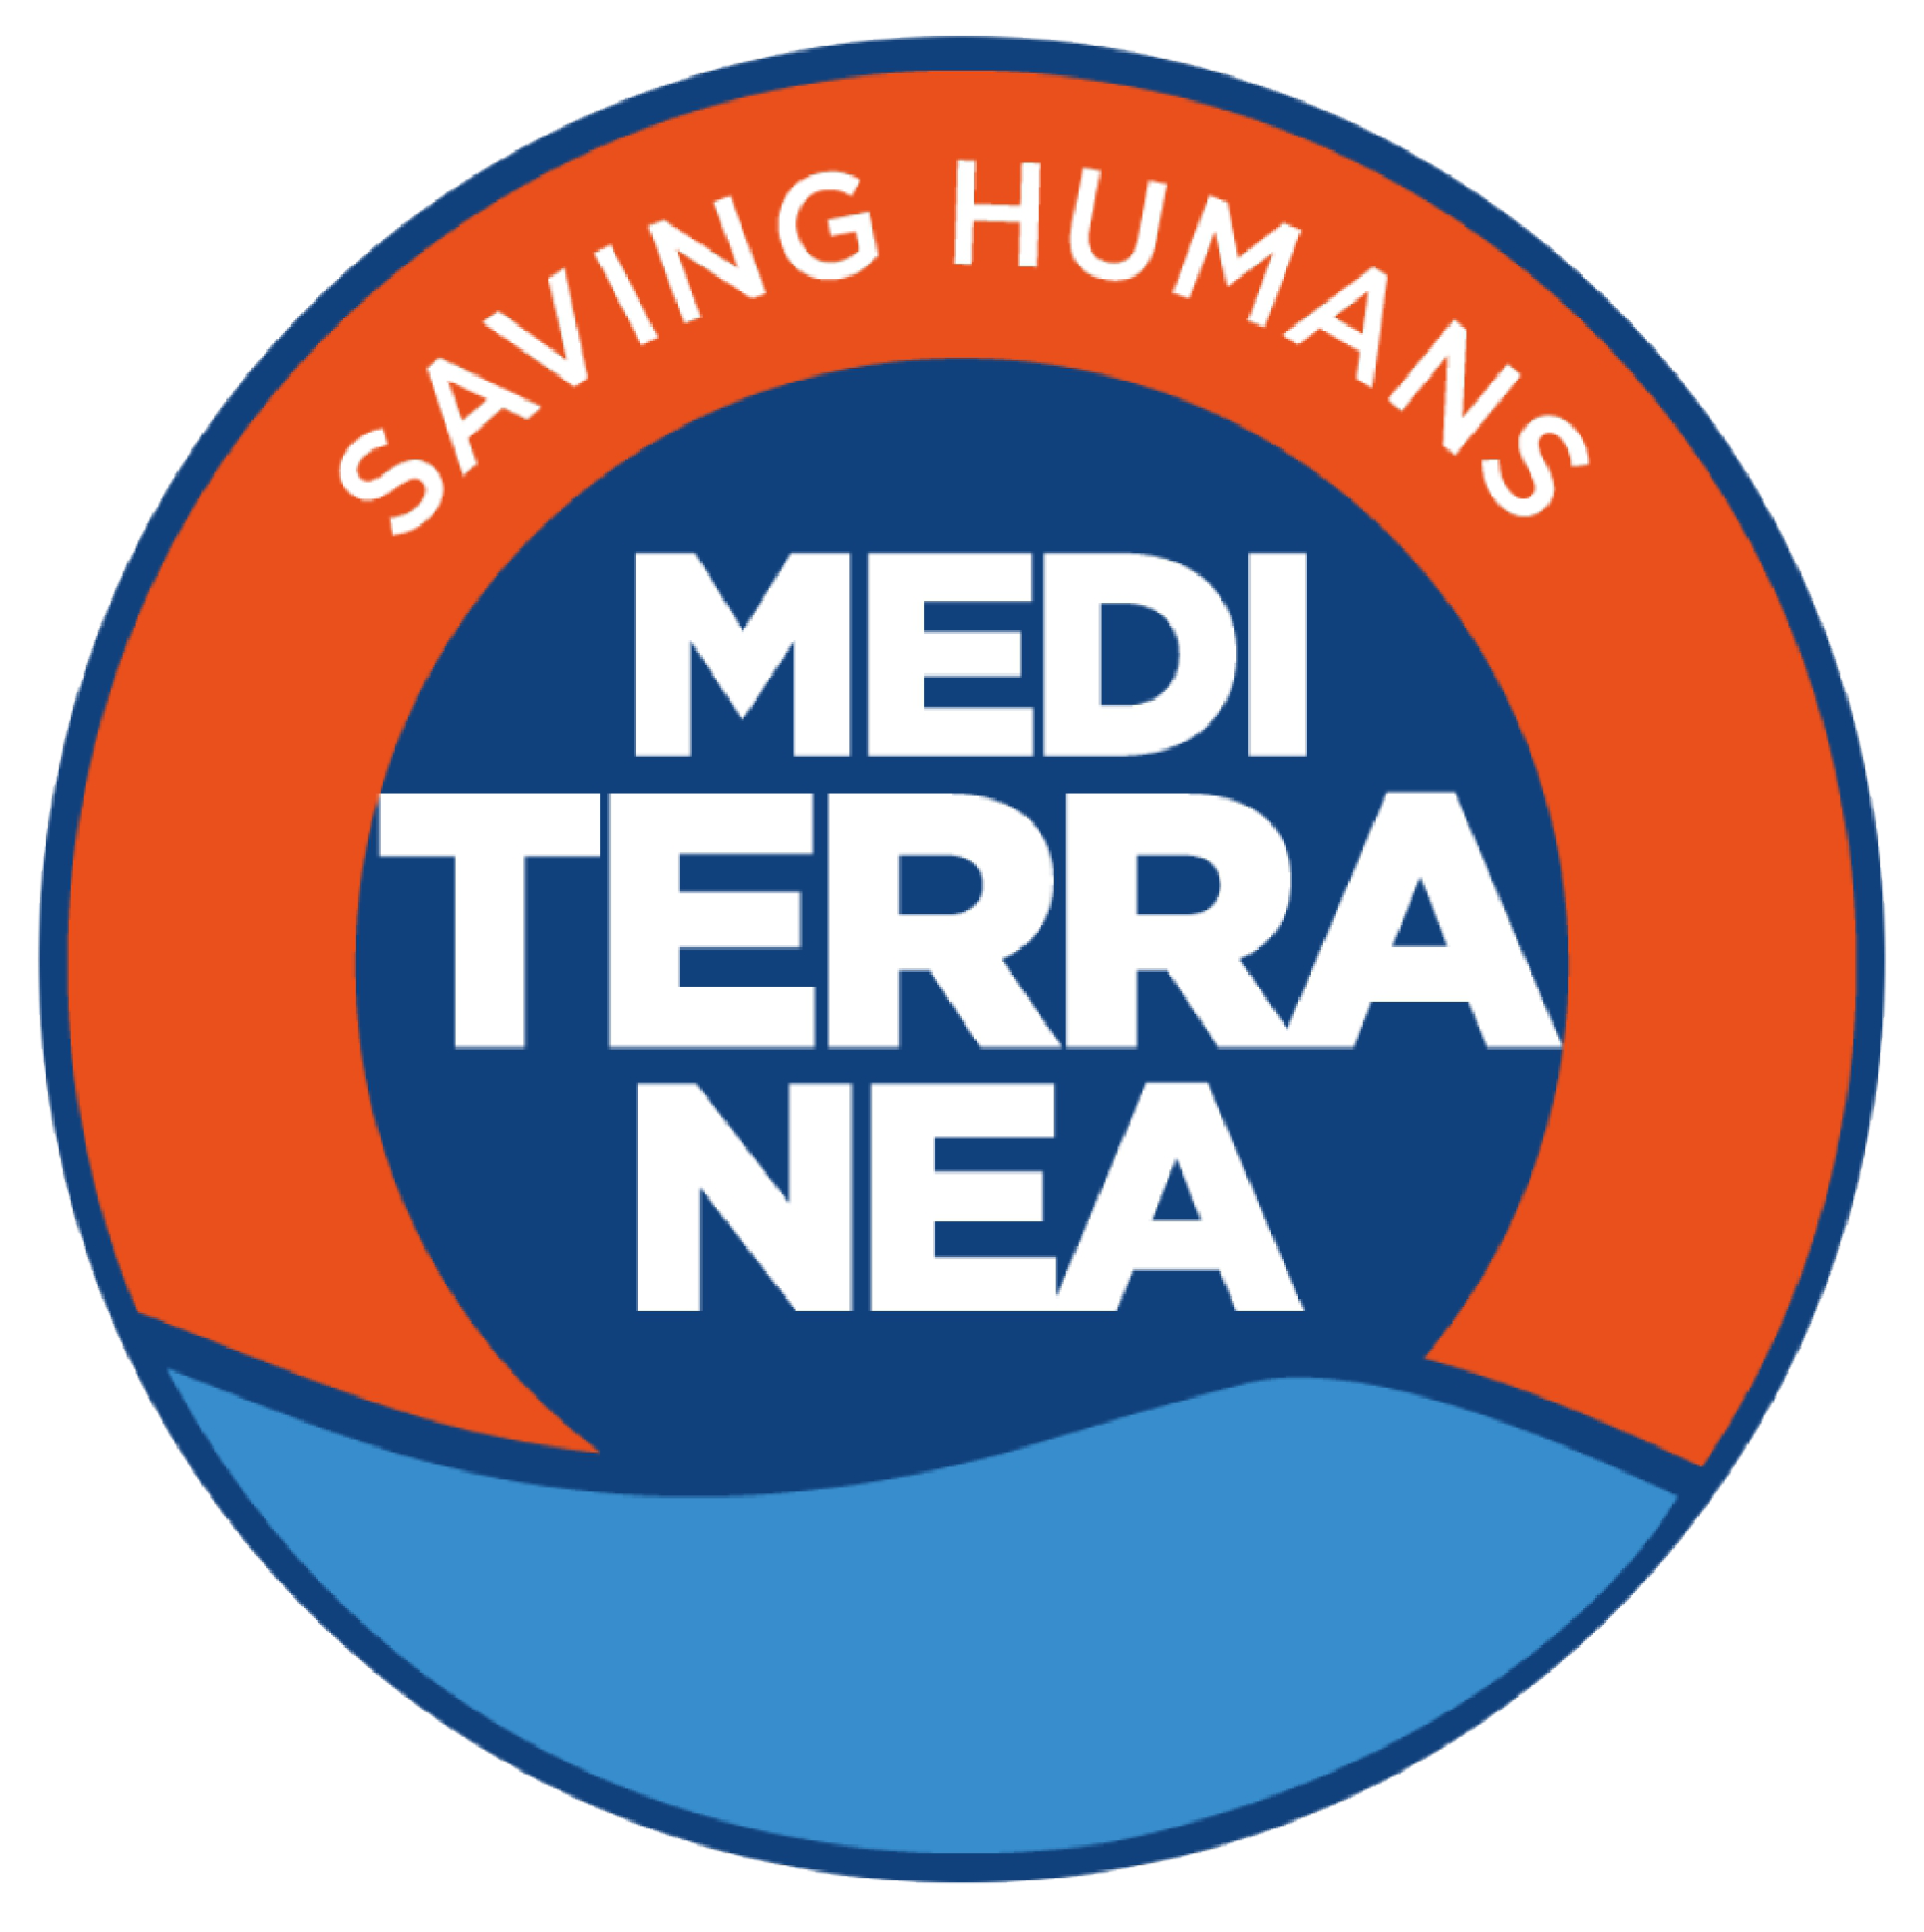 Logo Mediterranea